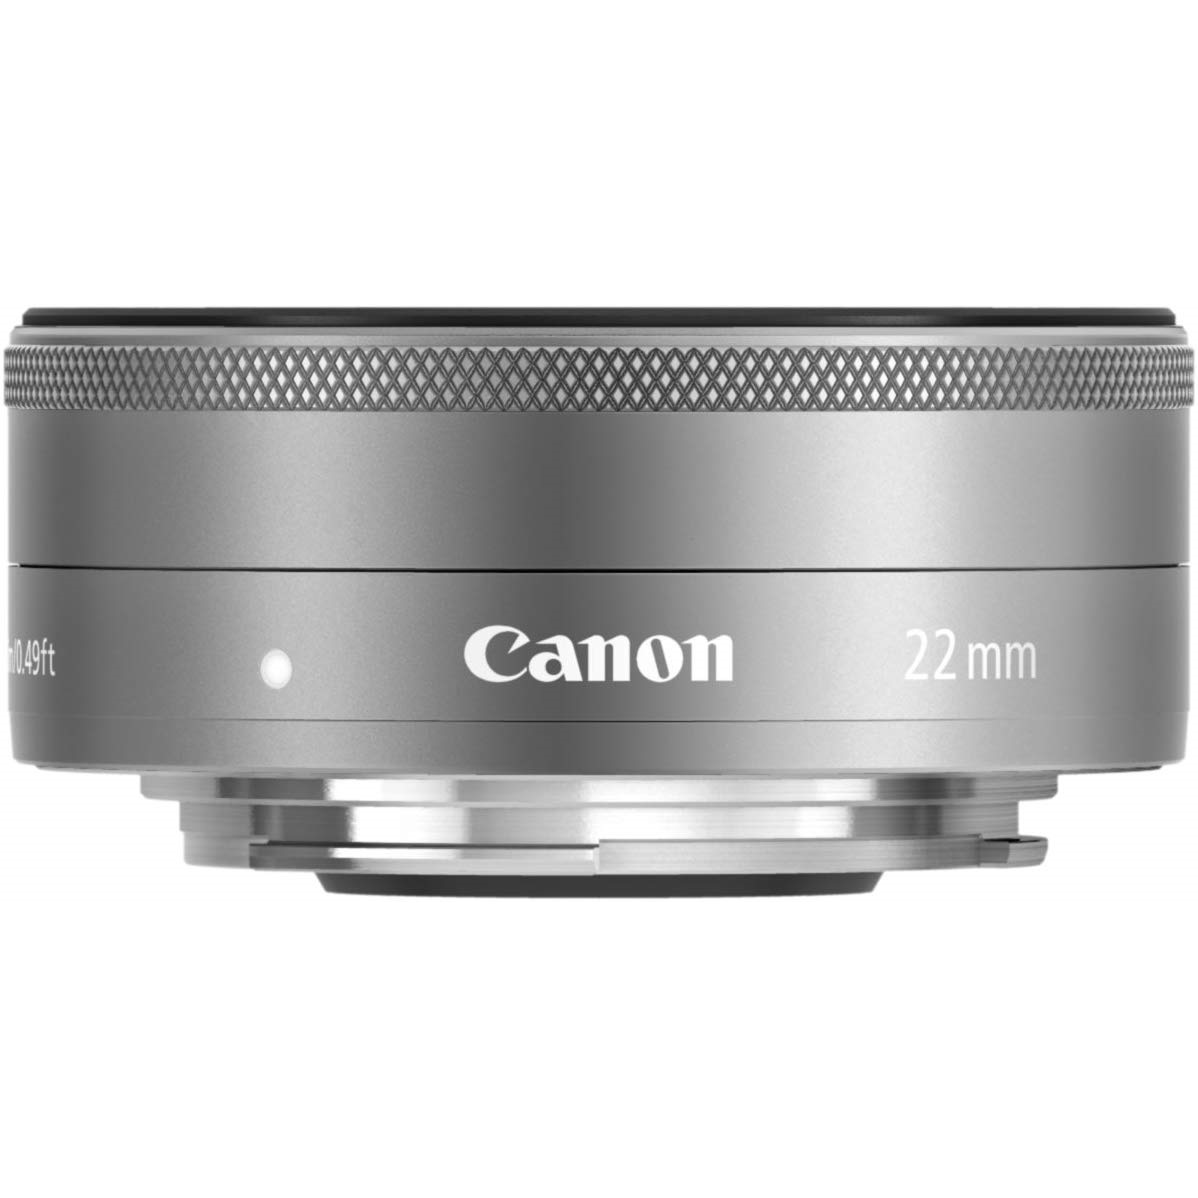 レンズ(単焦点)Canon EF-M 22mm F2.0 STM 明るい人気の単焦点レンズ